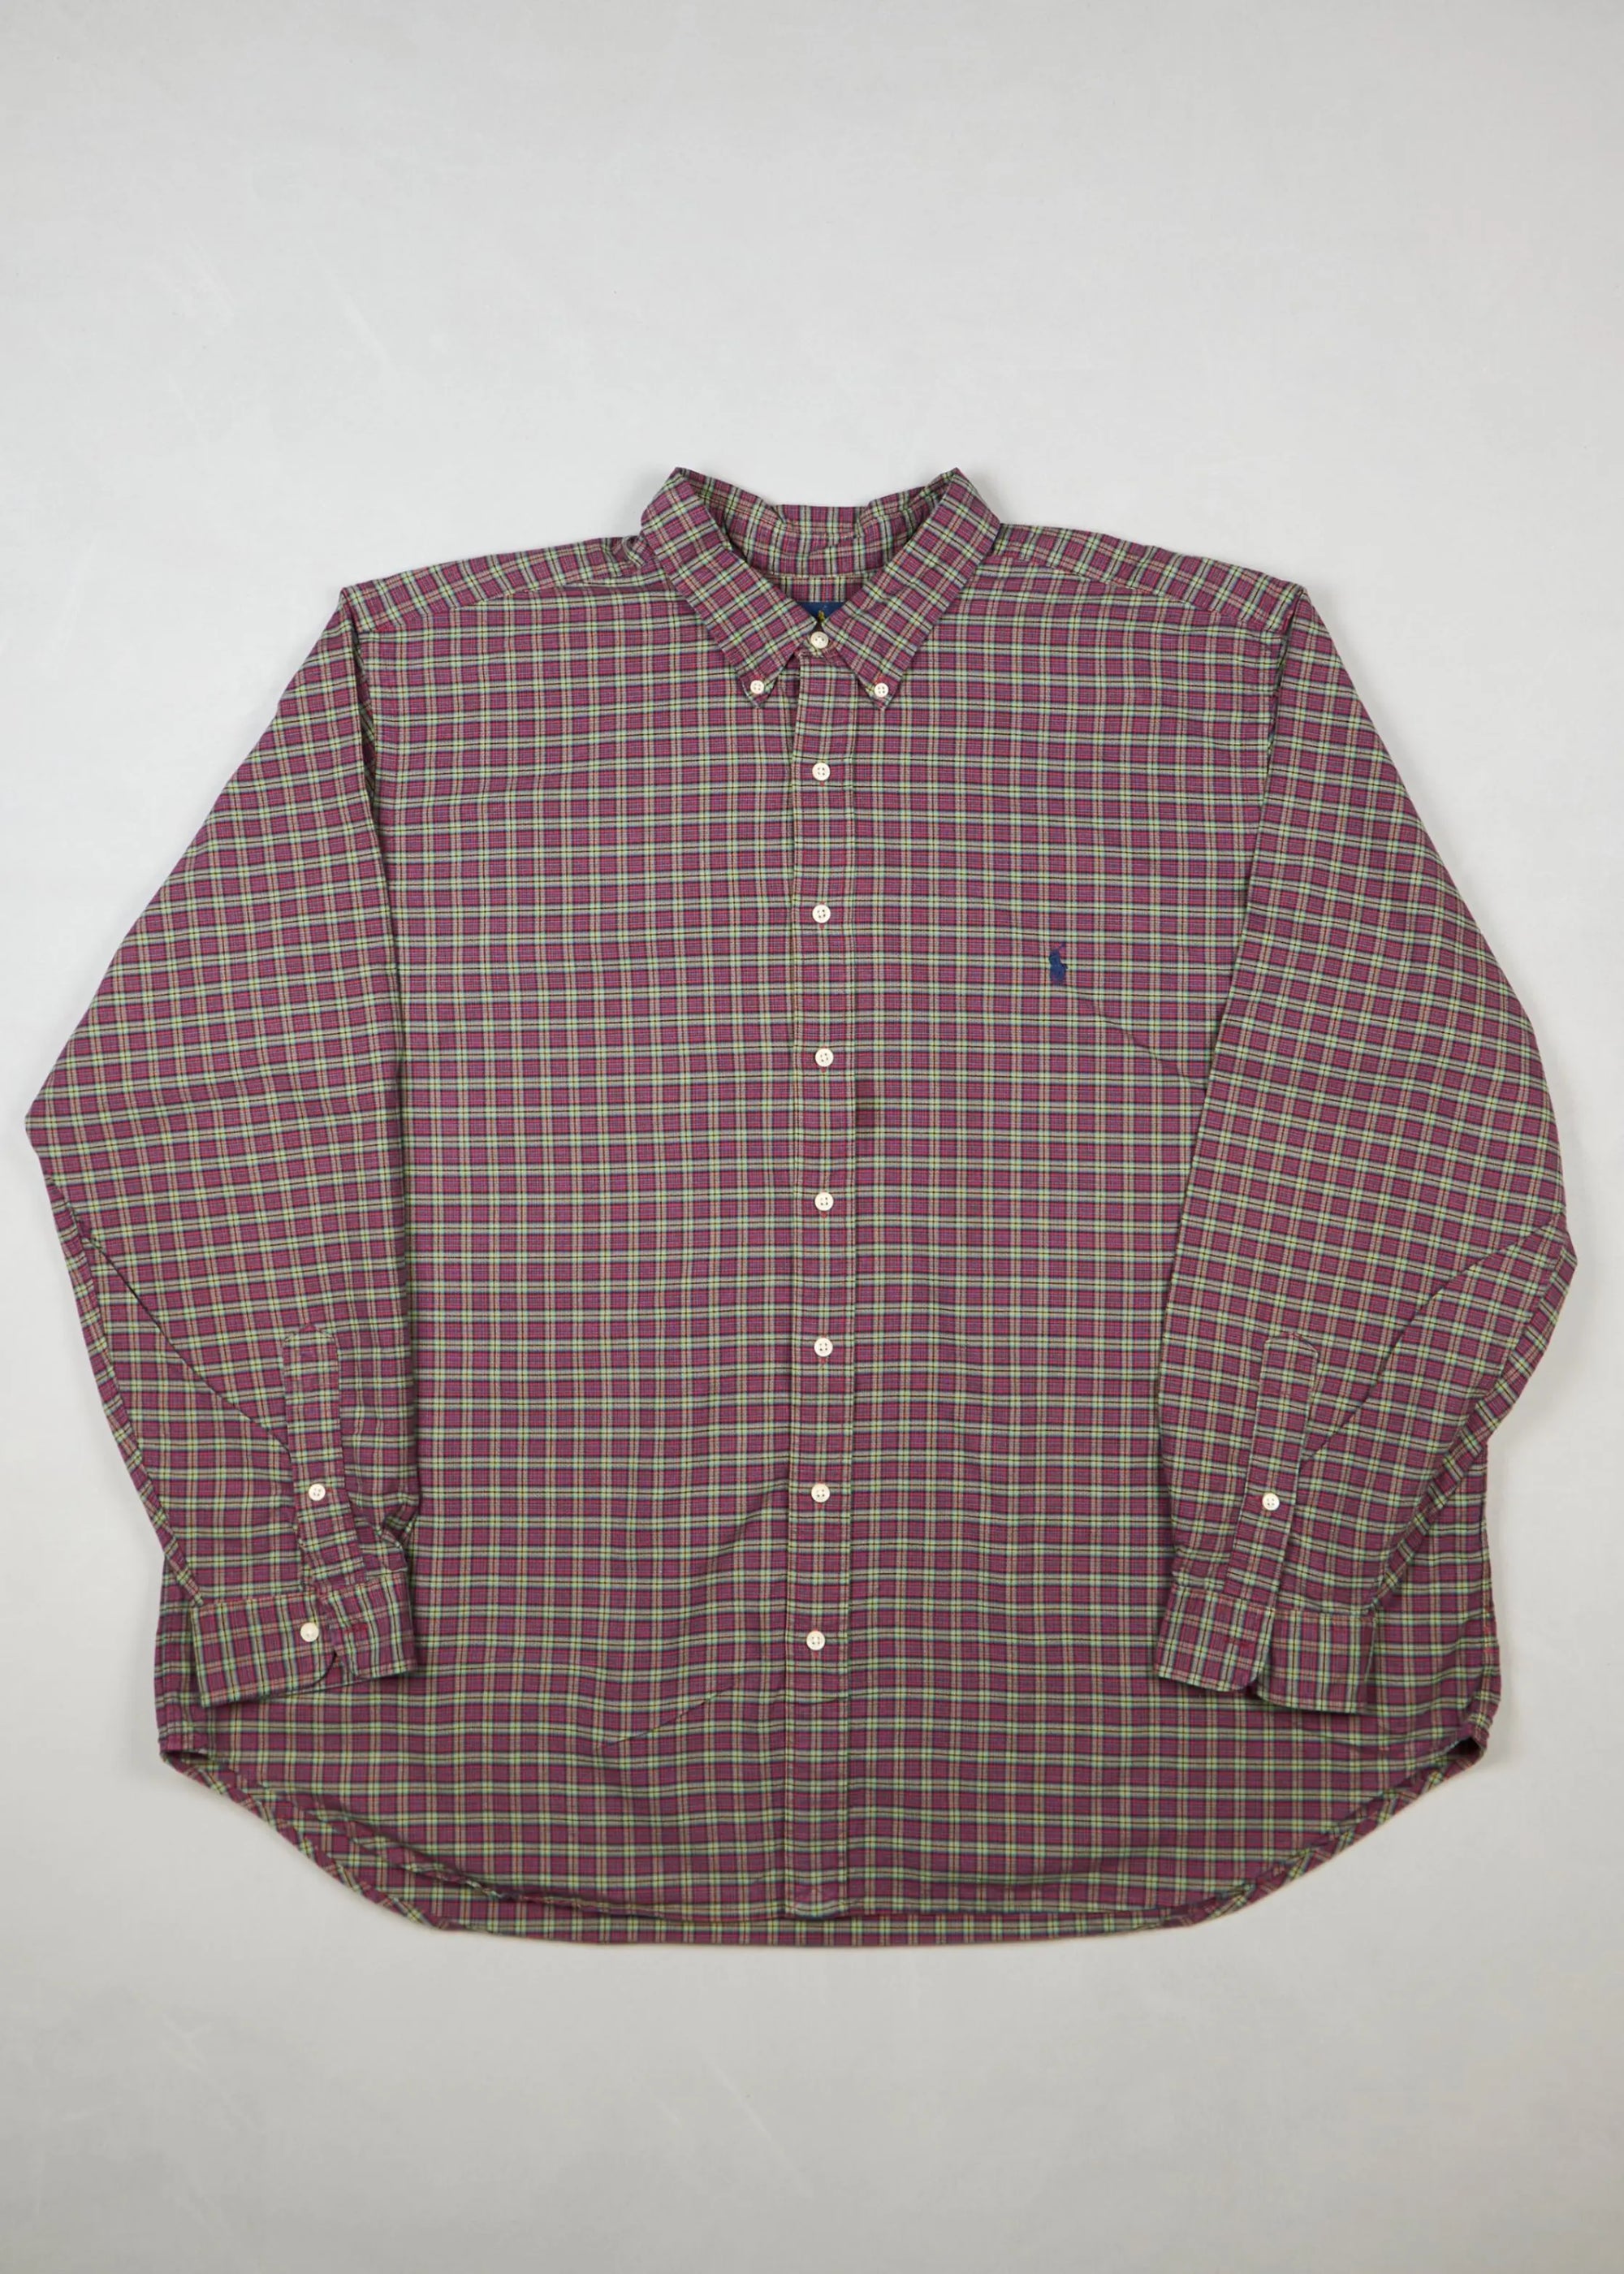 Ralph Lauren - Shirt ()